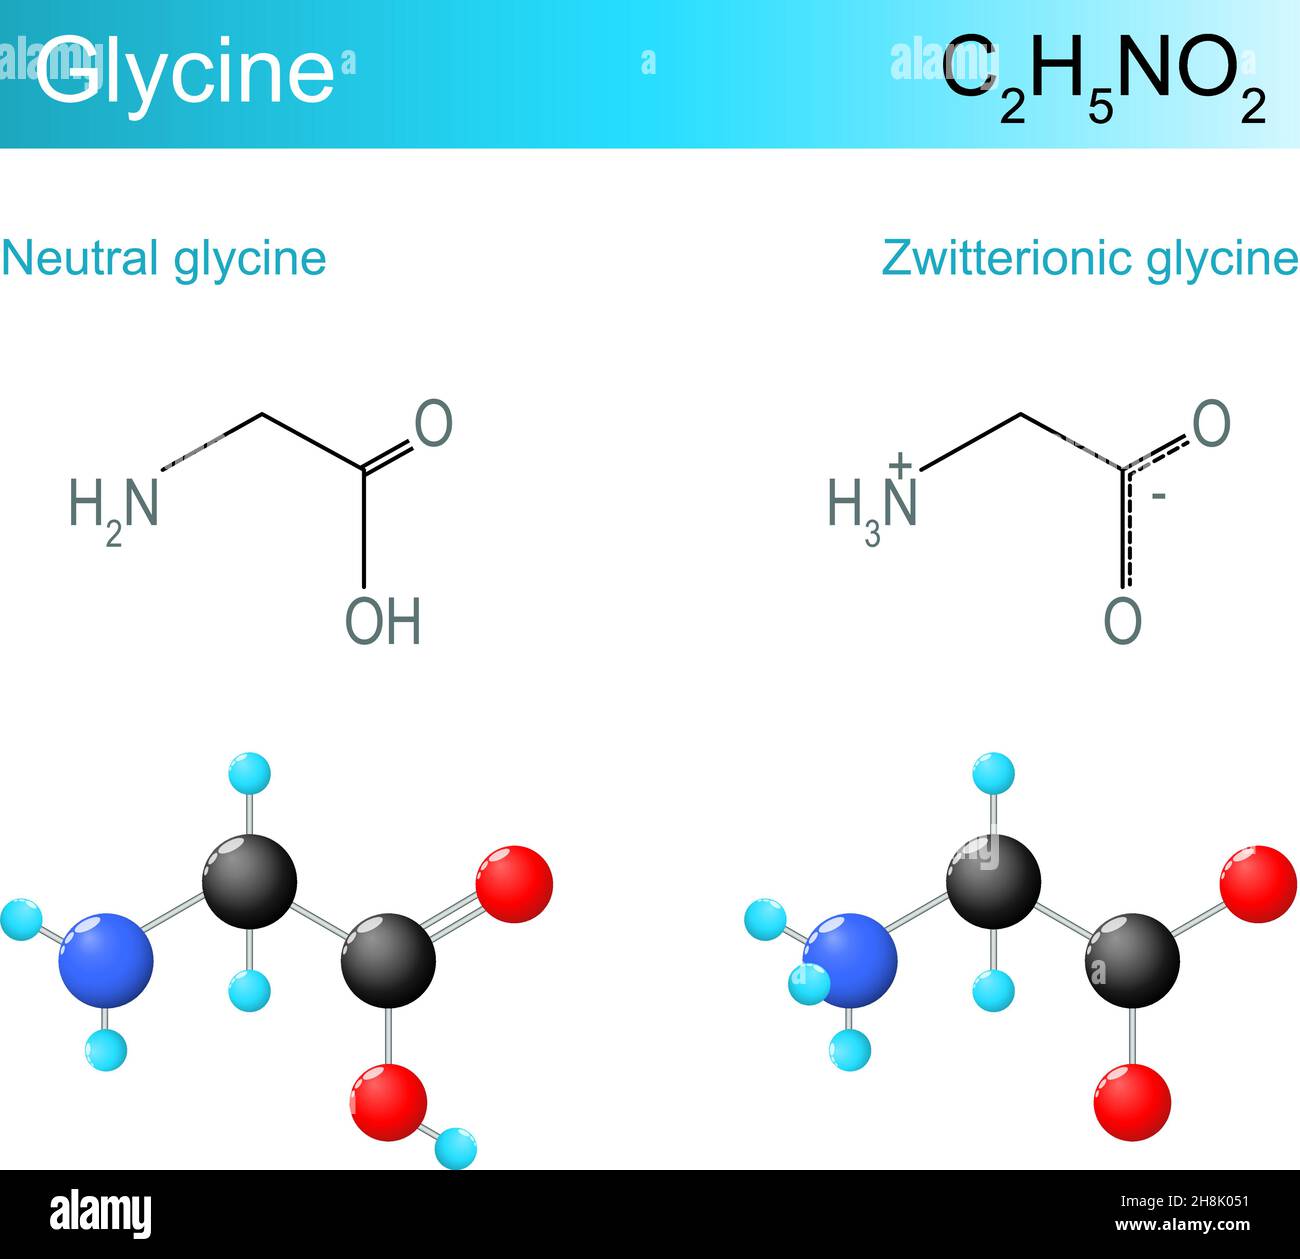 Formule moléculaire de la glycine. Glycine neutre et glycine zwittérionique.Formule et modèle chimiques structuraux d'un acide aminé stable le plus simple.Vecteur Ill Illustration de Vecteur